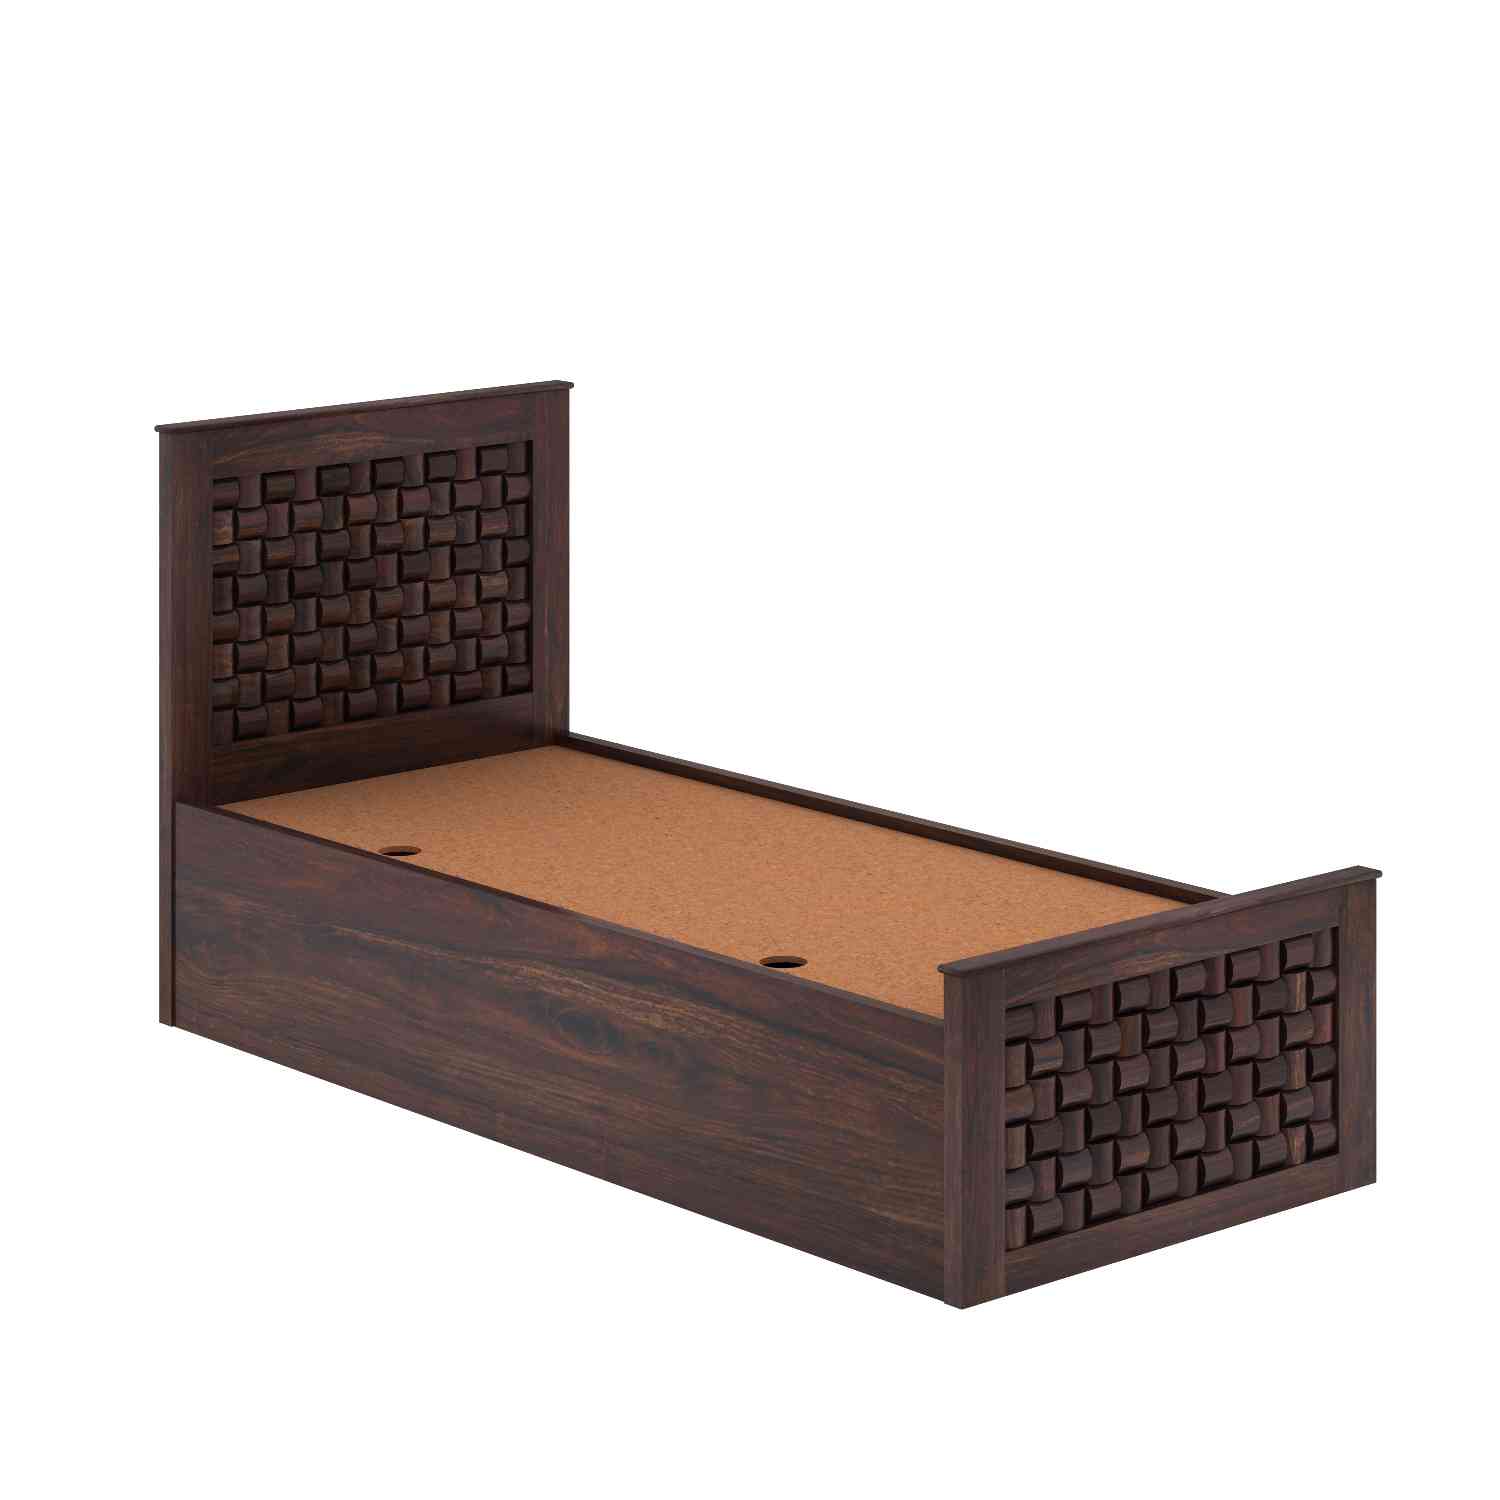 Olivia Solid Sheesham Wood Single Bed With Box Storage (Walnut Finish)